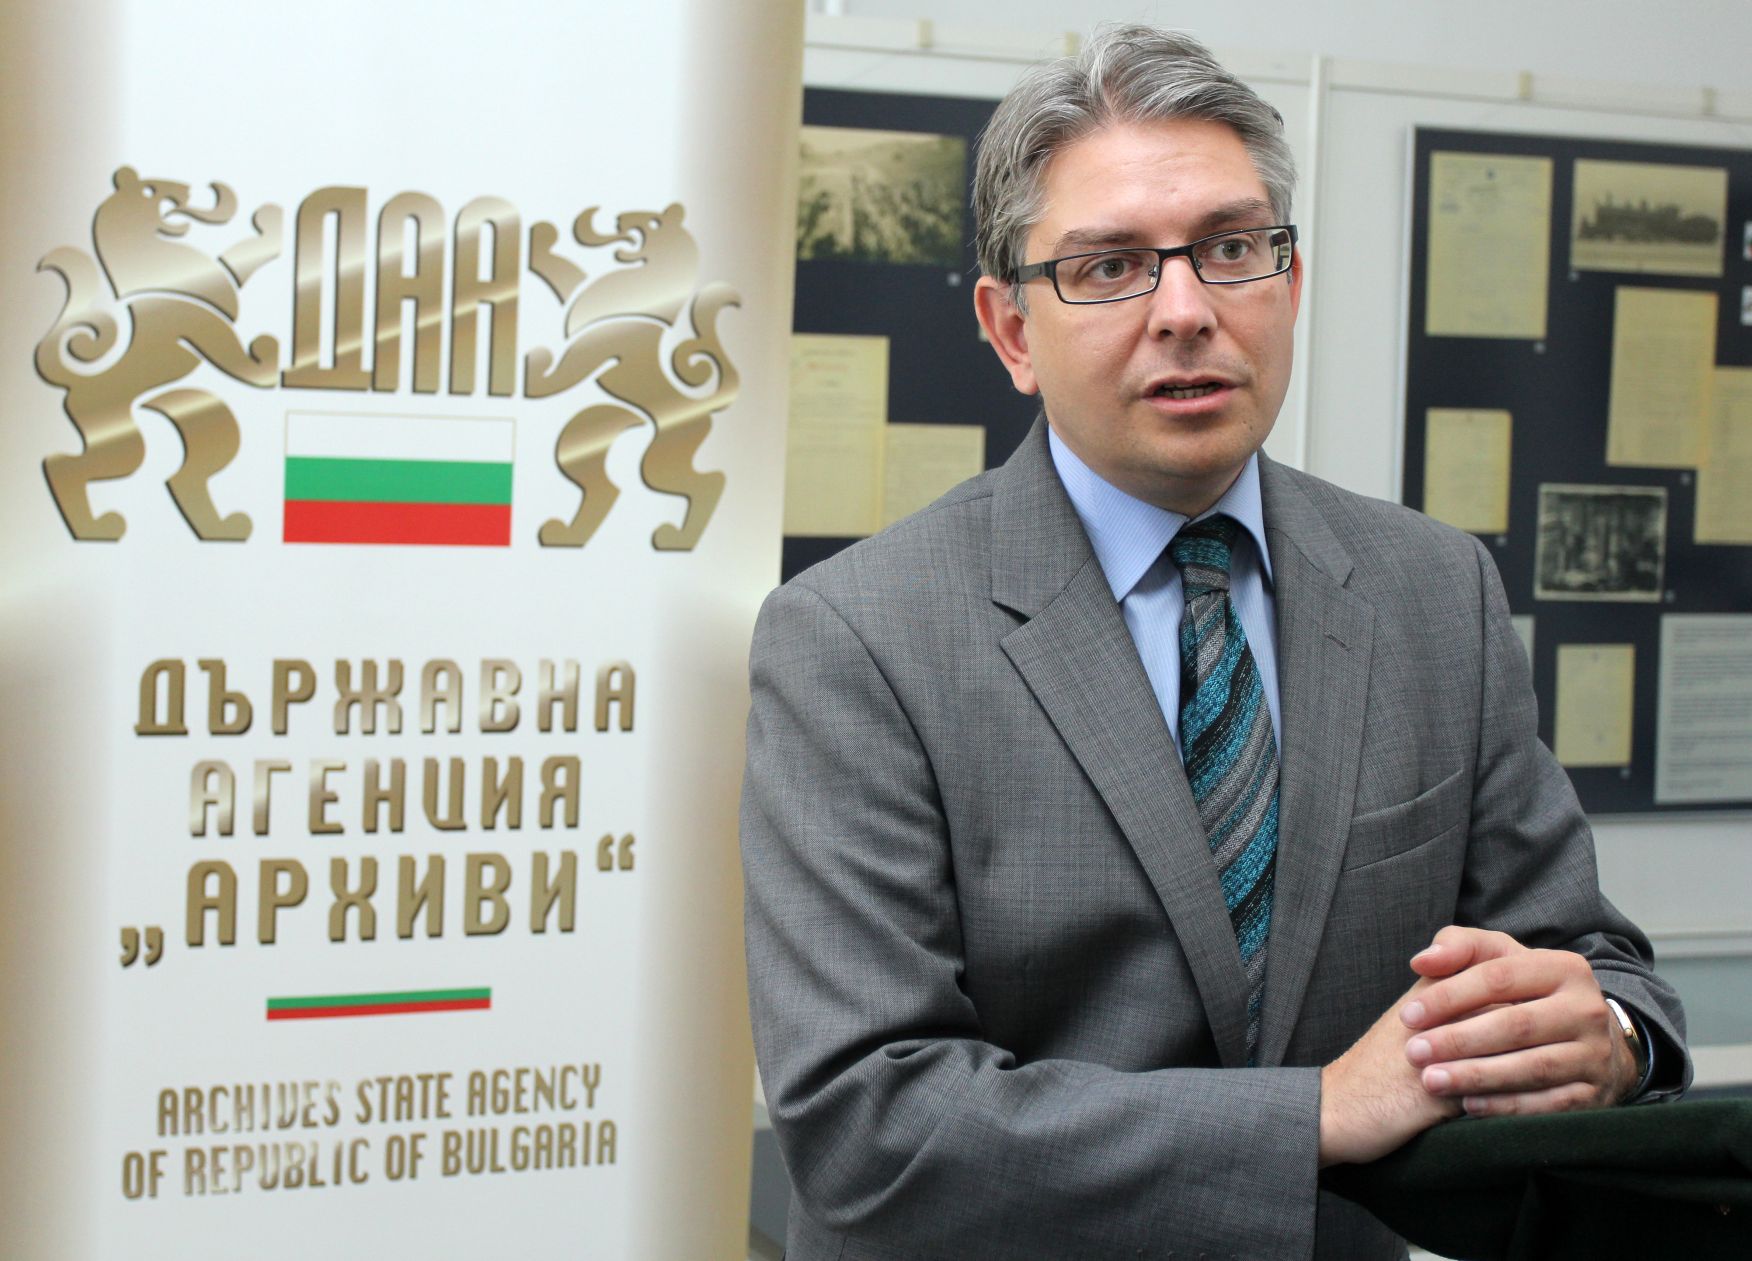 Д-р Мартин Иванов допълни, че в протоколите от заседанията на Политбюро се забелязва и ”огромно дребнотемие”